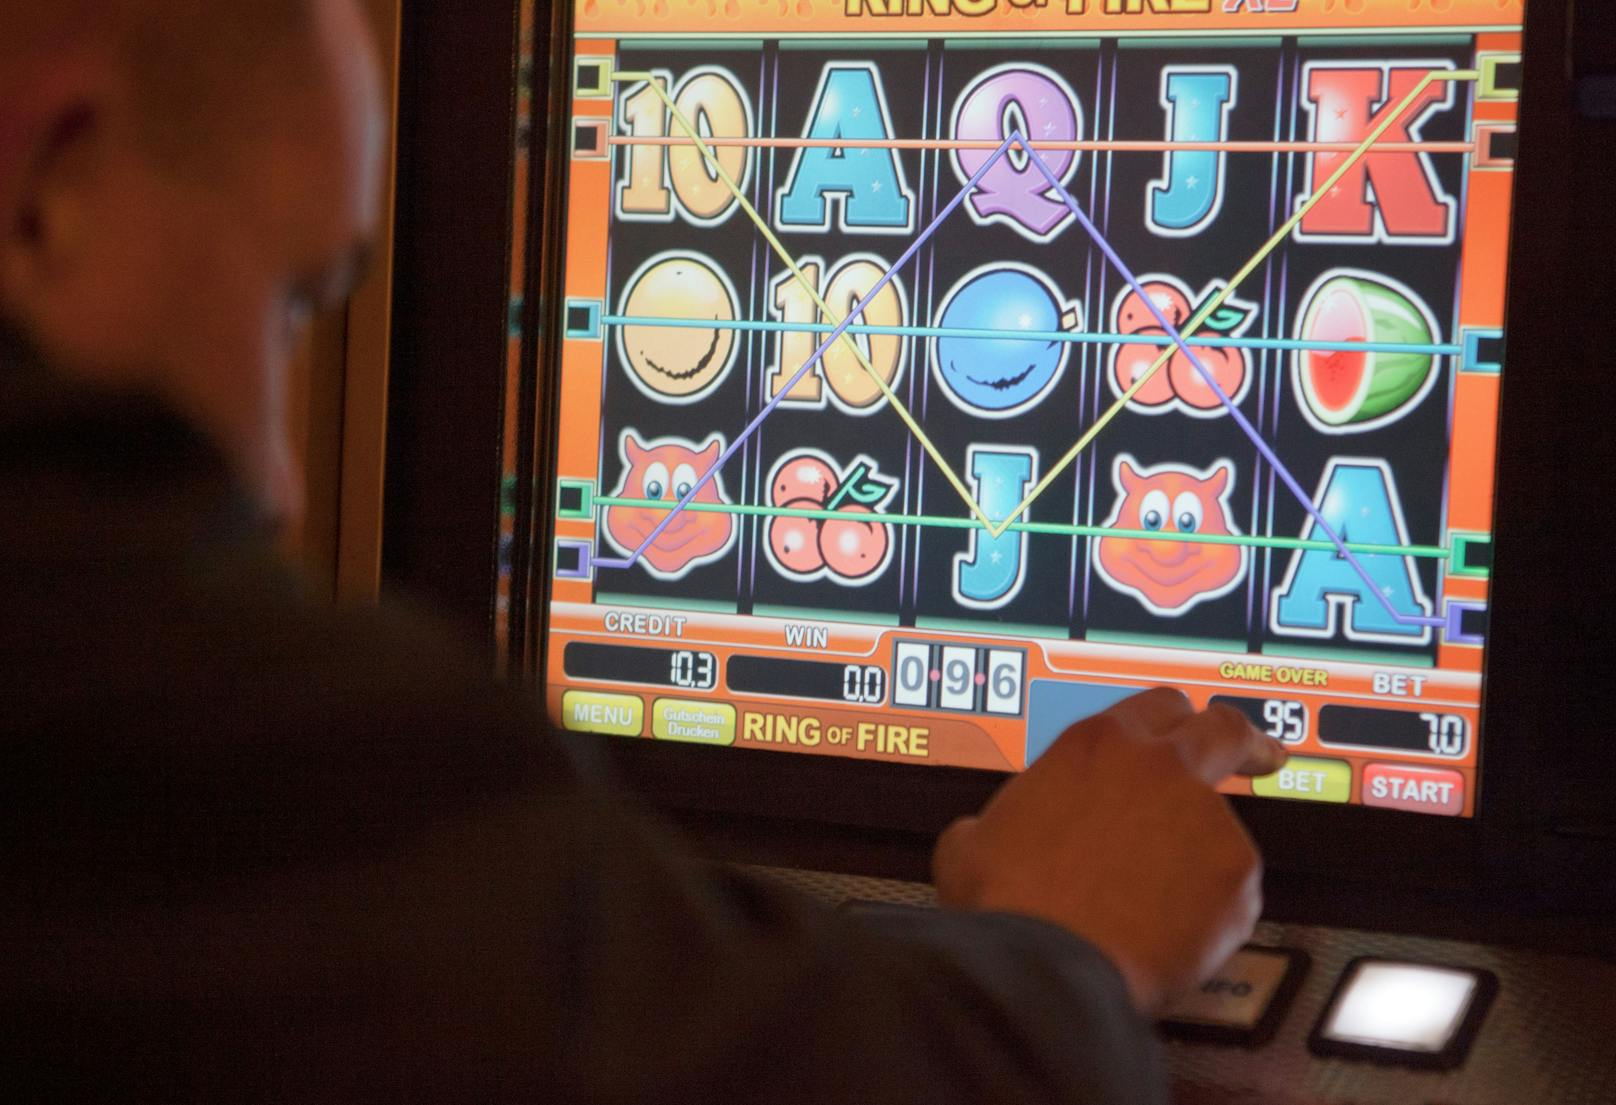 Glücksspiel-Betreiber wurden nun von der Spielerhilfe wegen Datenschutz-Bedenken angezeigt. (Symbolfoto)